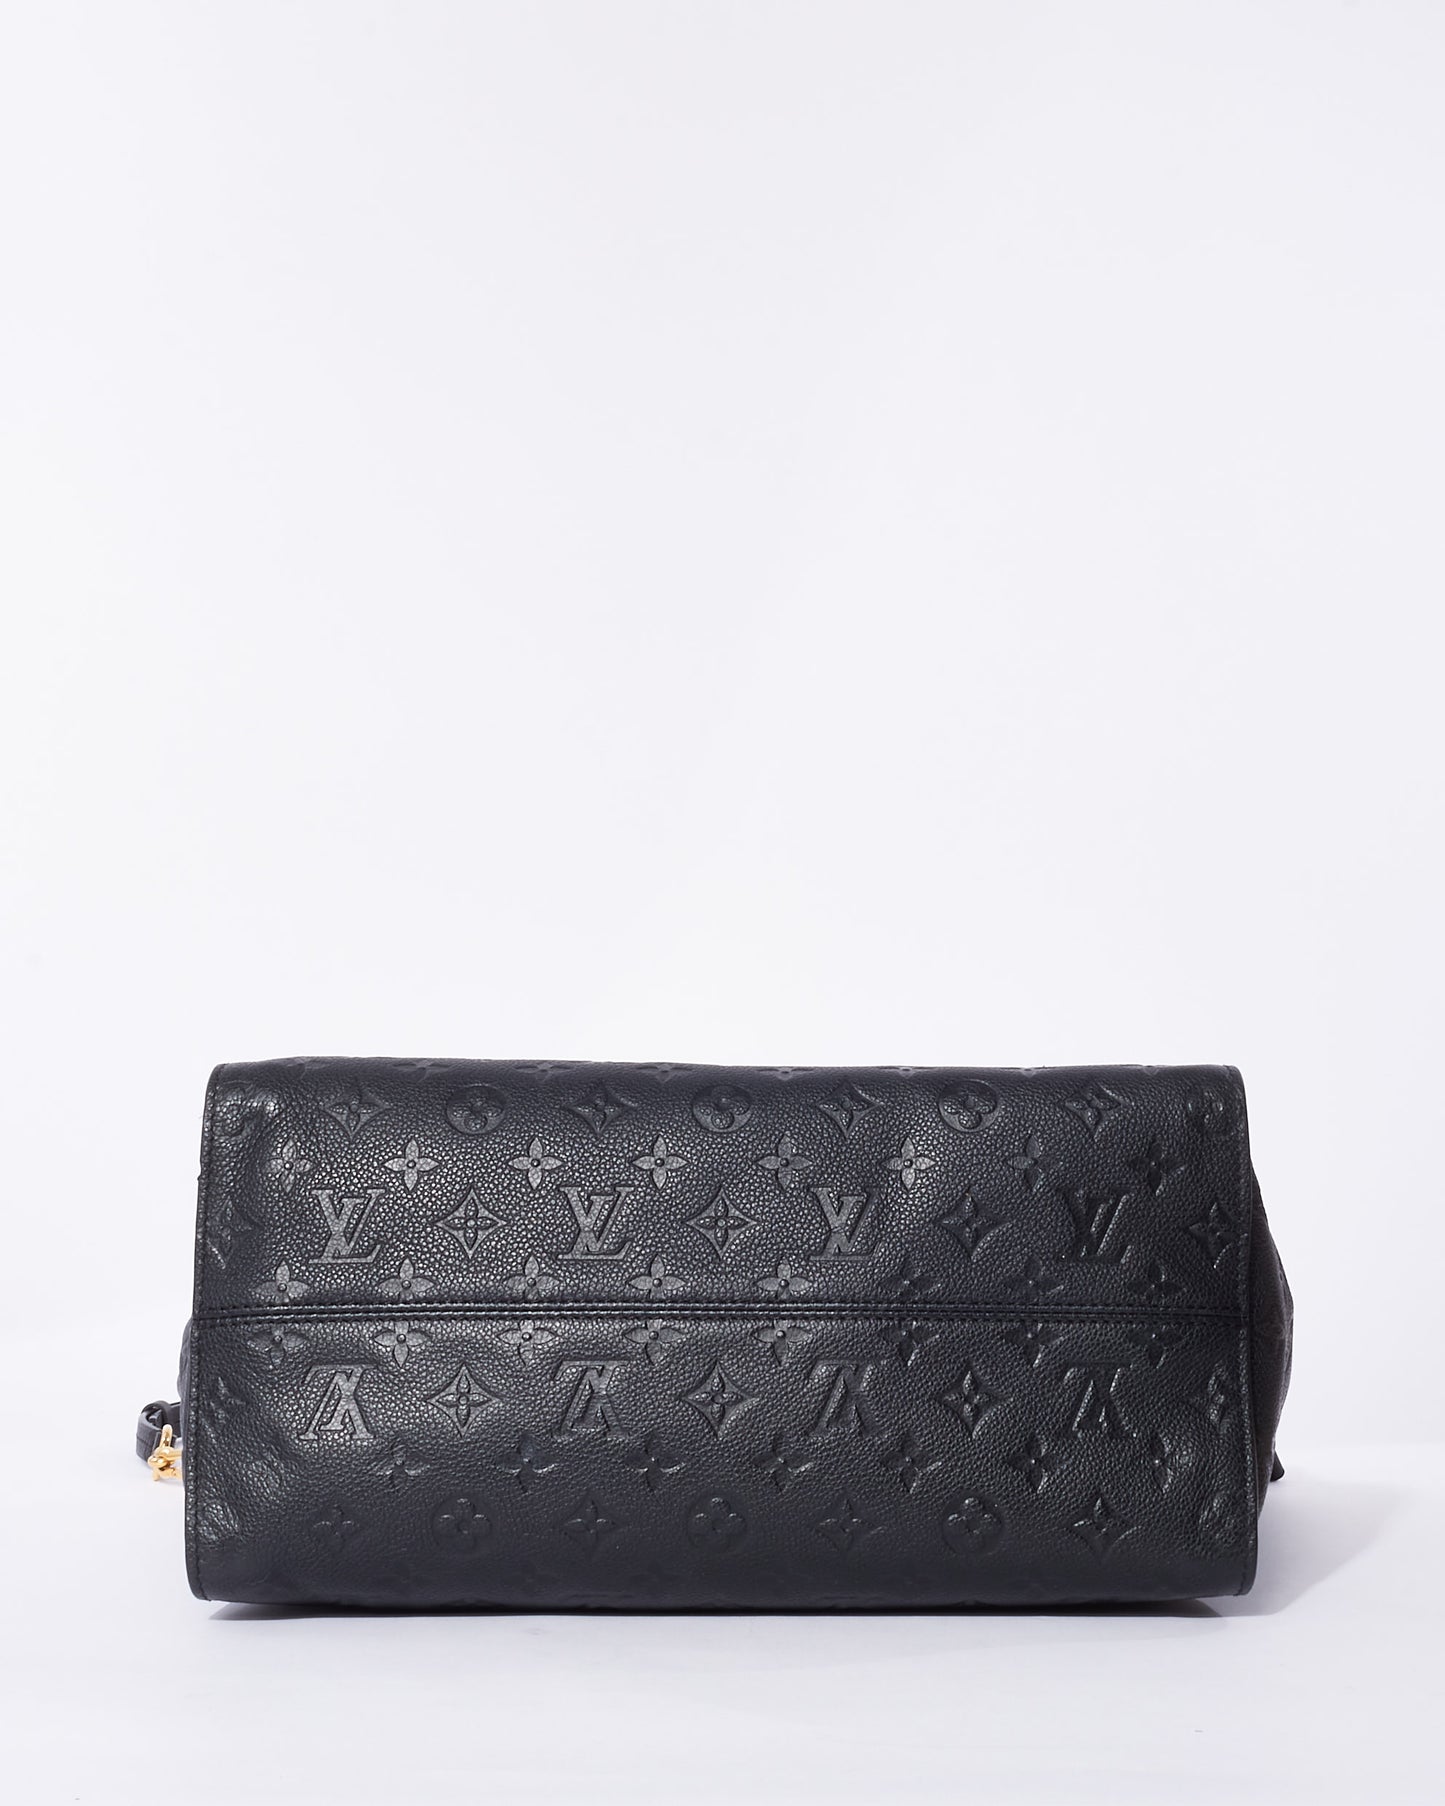 Louis Vuitton Black Empreinte Leather Lumineuse GM Tote